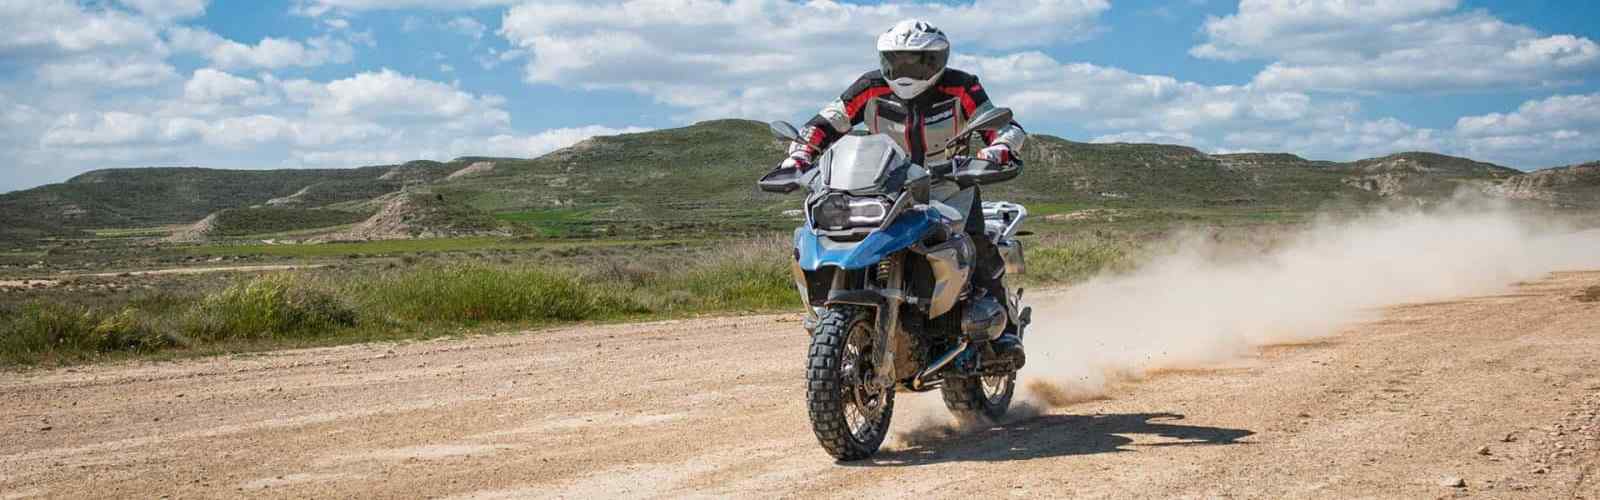 Moto avventura Off-Road mozzafiato attraverso il Sud Africa